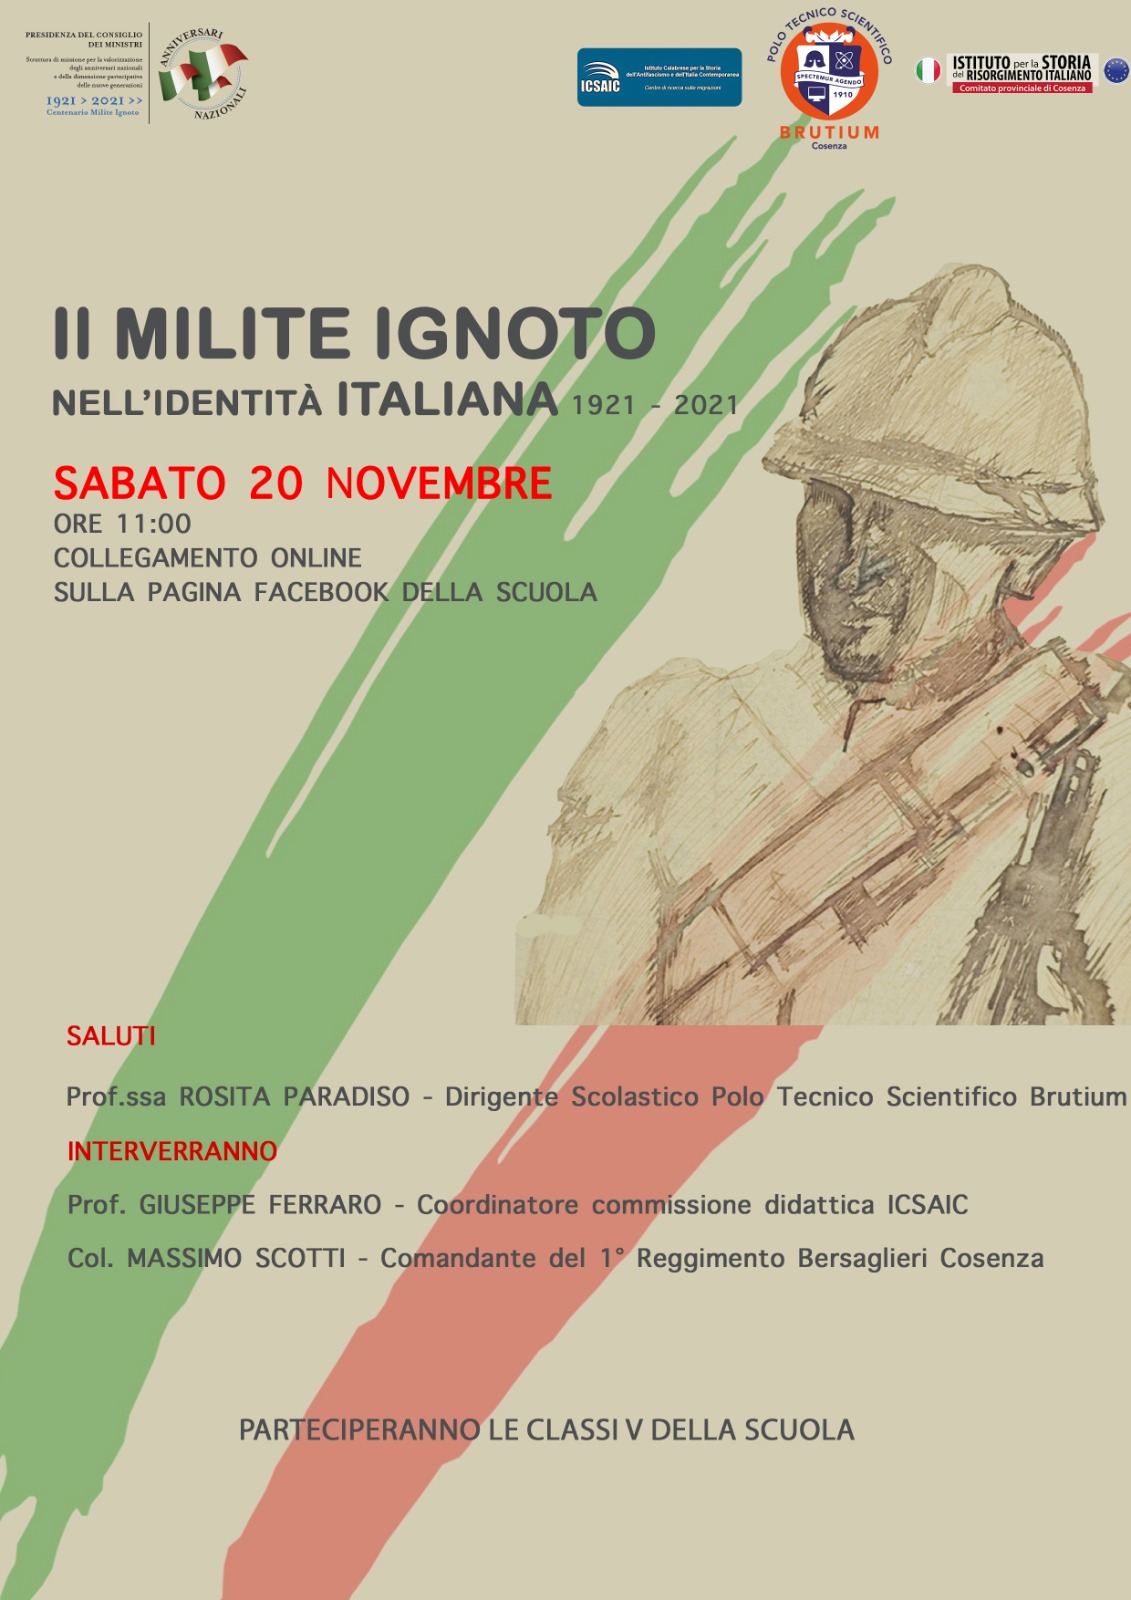 Il Milite Ignoto nell’identità  italiana. All’iniziativa del Brutium un intervento dell’ICSAIC